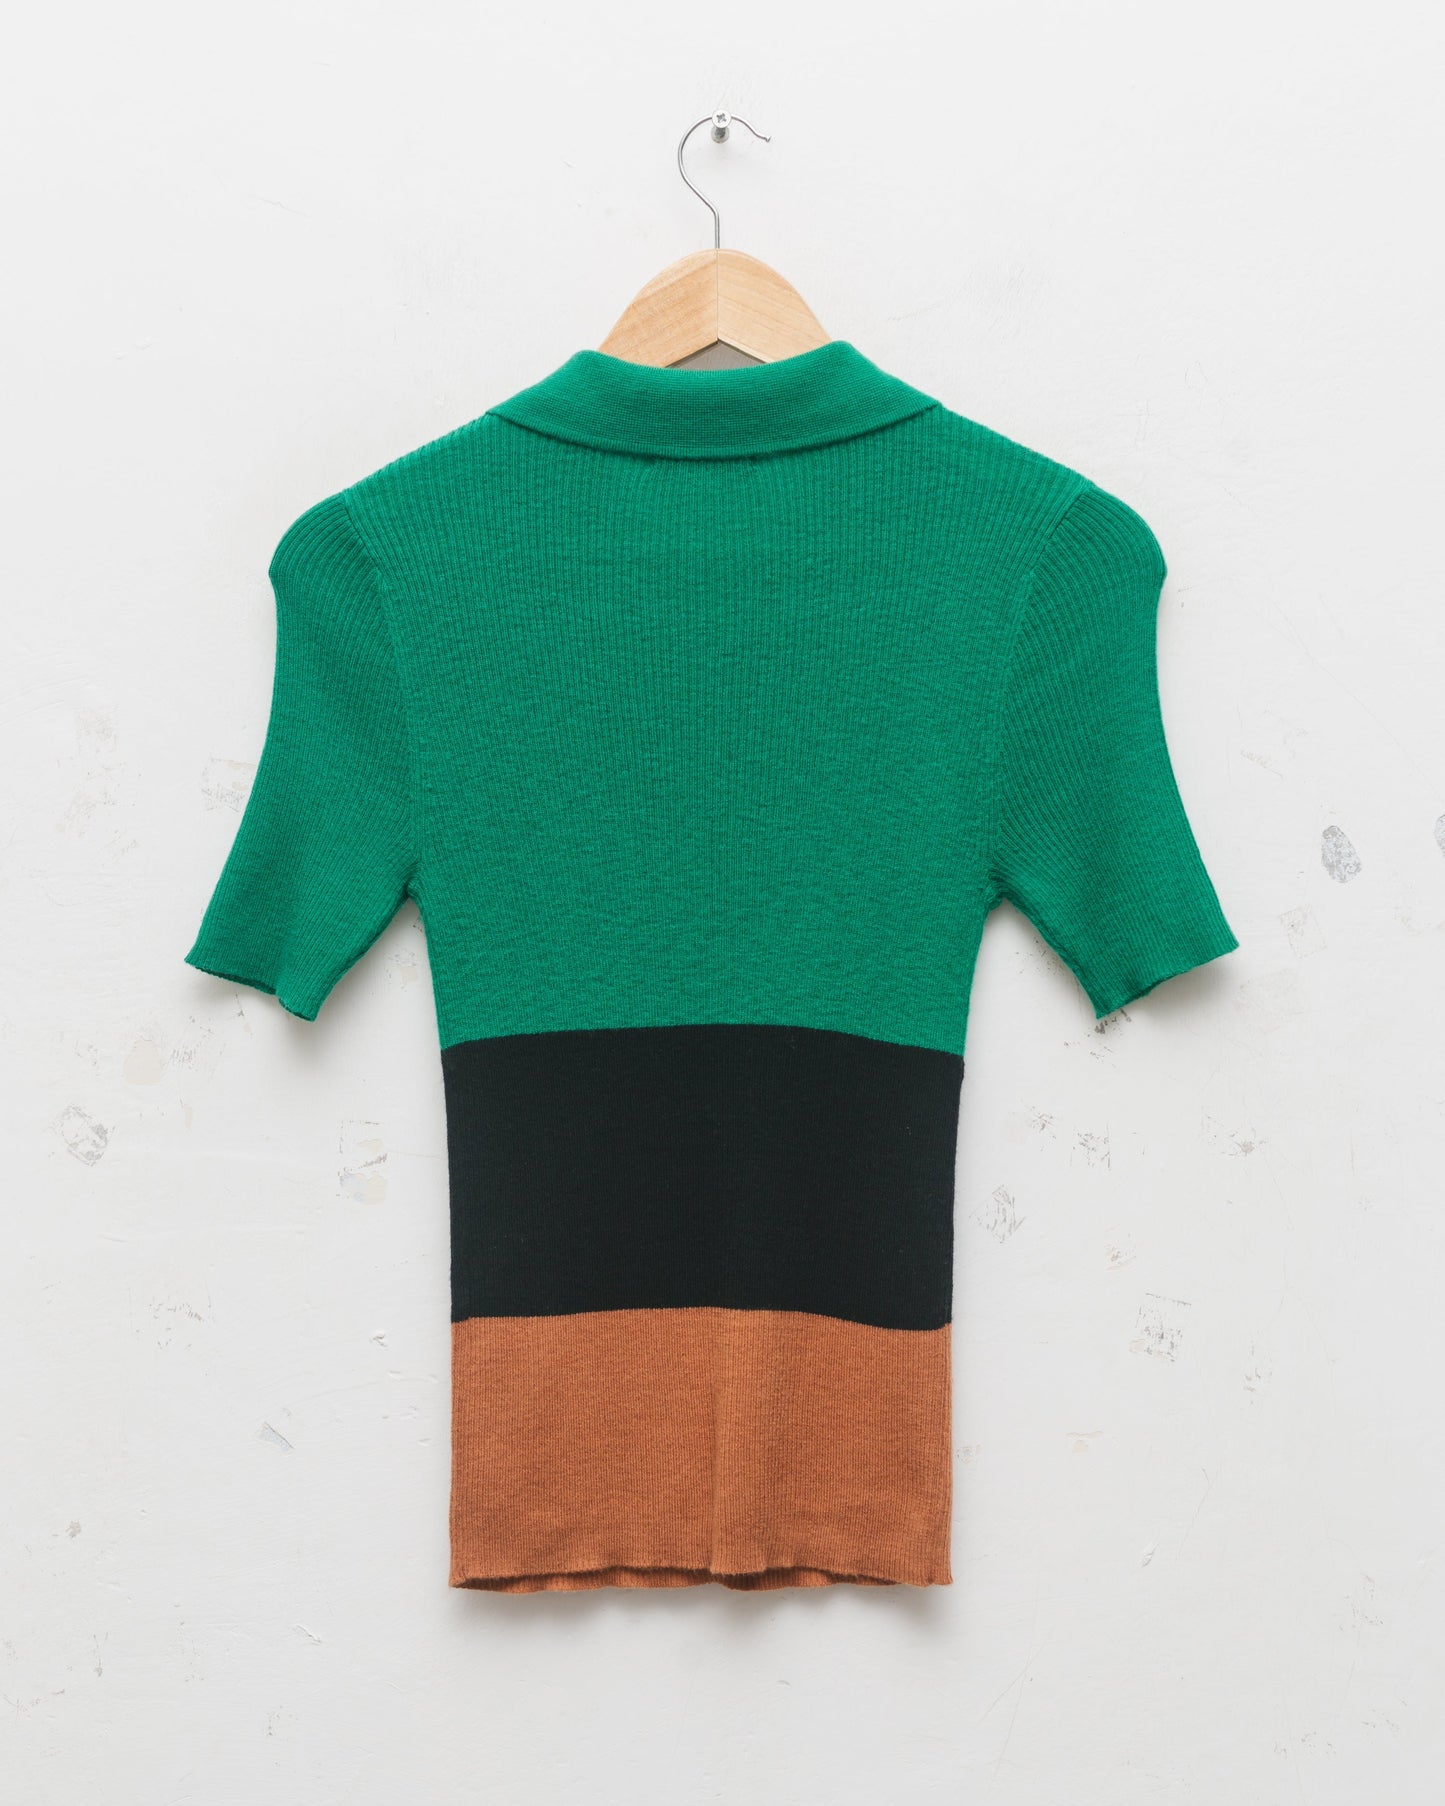 Colour block knit top